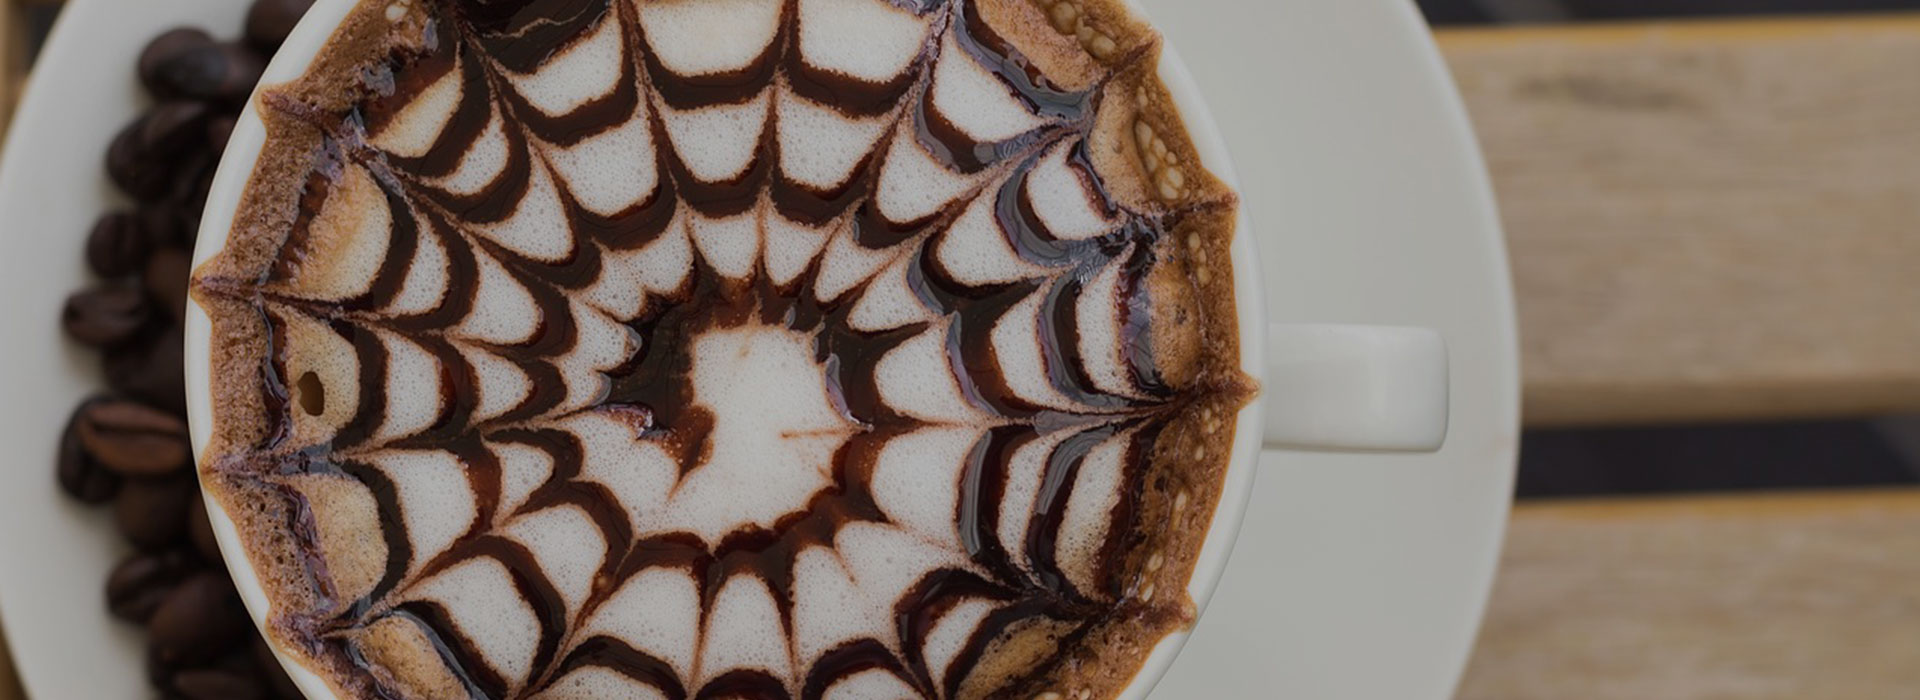 Fotografía detallada de una taza de café con una forma de espiral dibujada en la espuma. Vista desde arriba.